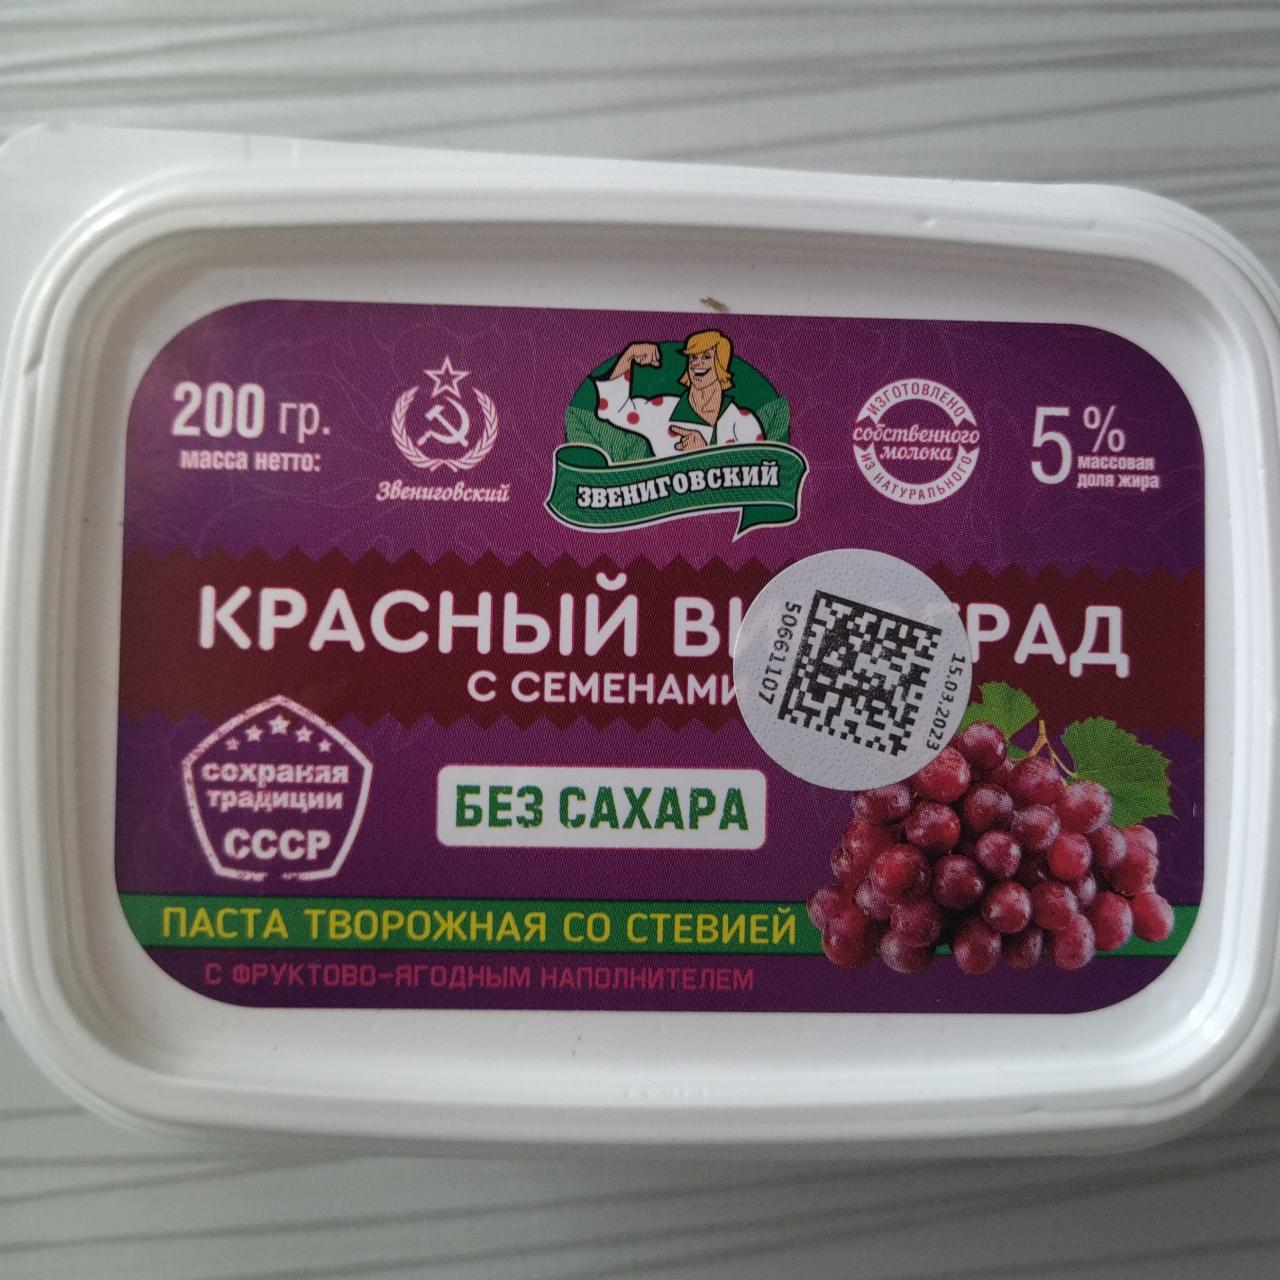 Фото - творожная паста со стевией красный виноград Звениговский